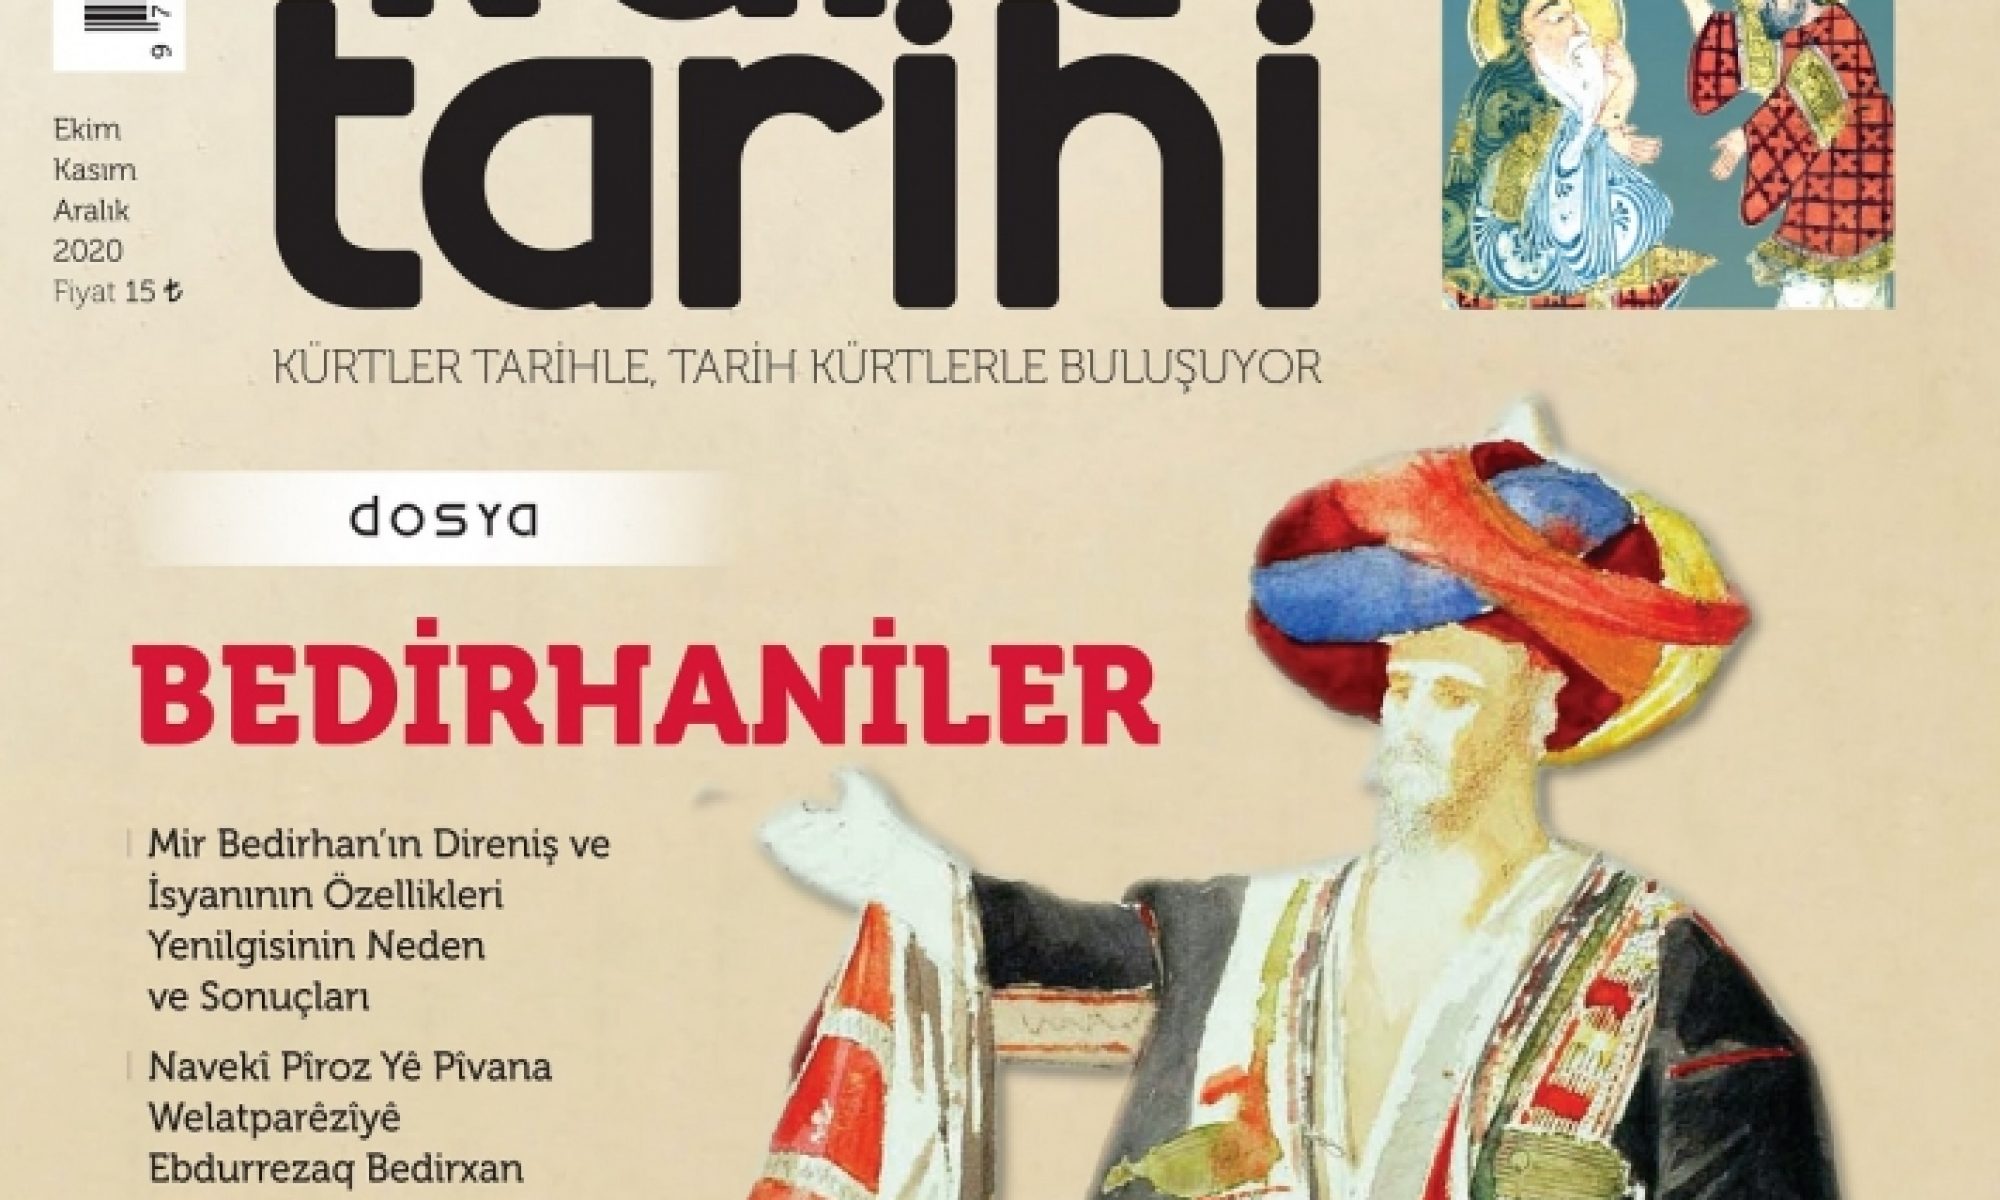 Kürt Tarihi Dergisi’nin 42'inci Sayısı “Bedirxaniler” dosyası ile çıktı